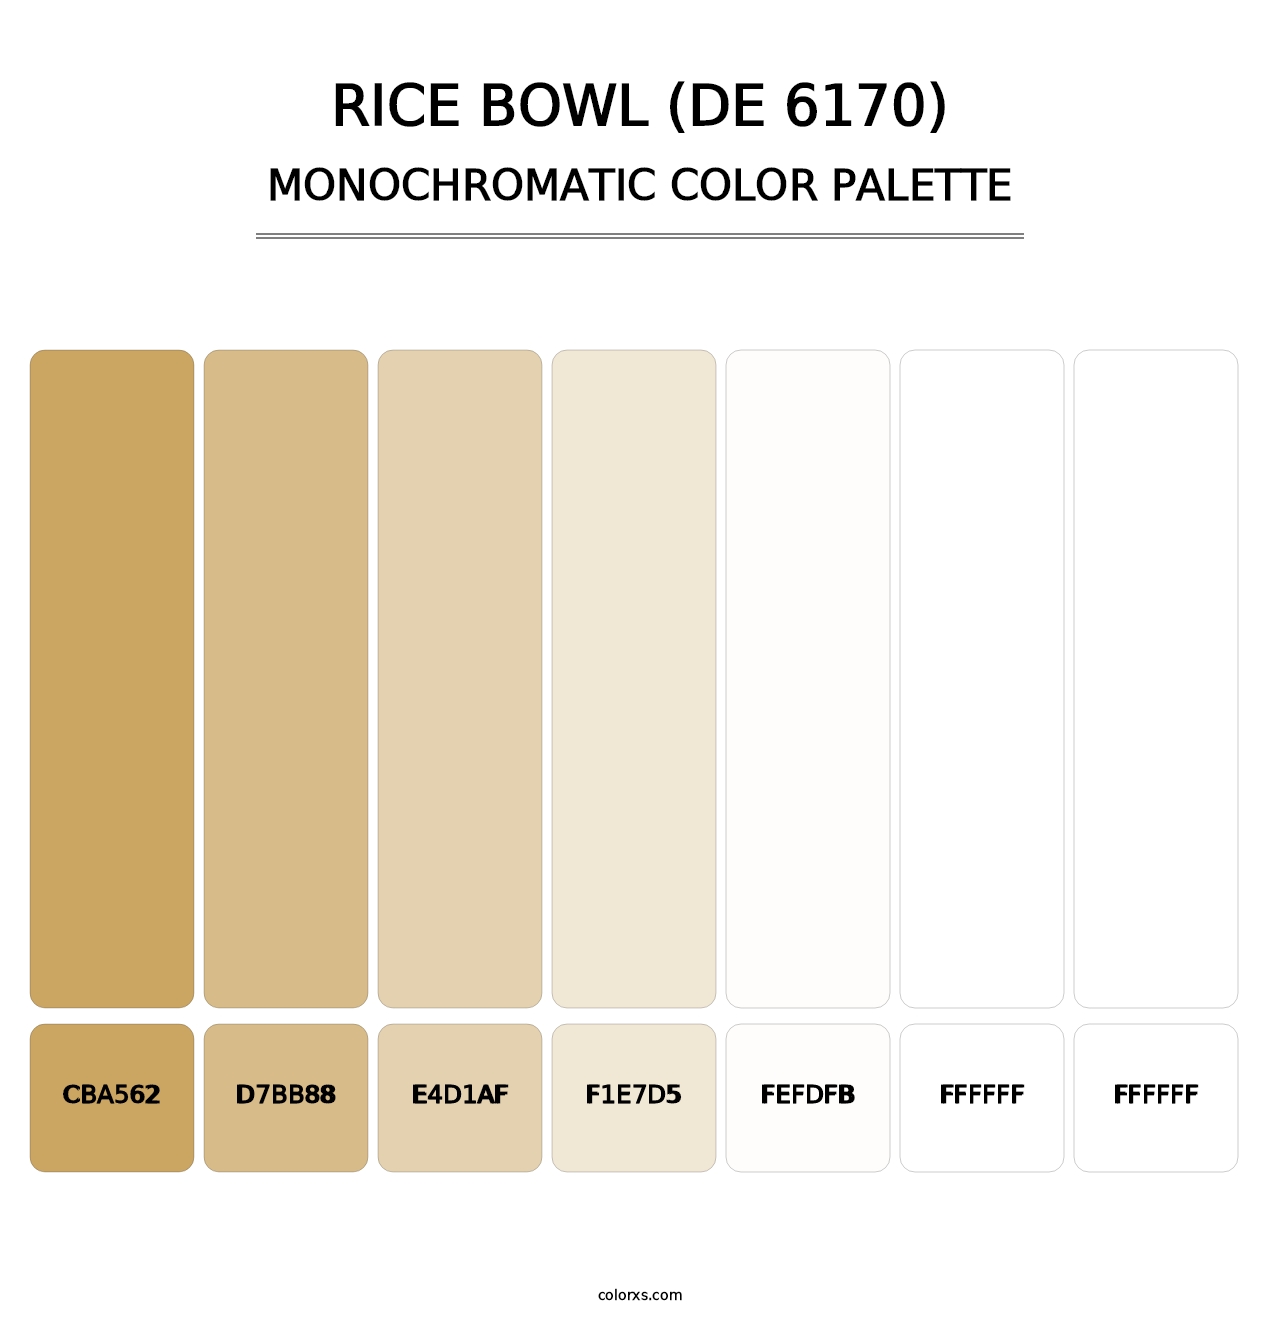 Rice Bowl (DE 6170) - Monochromatic Color Palette